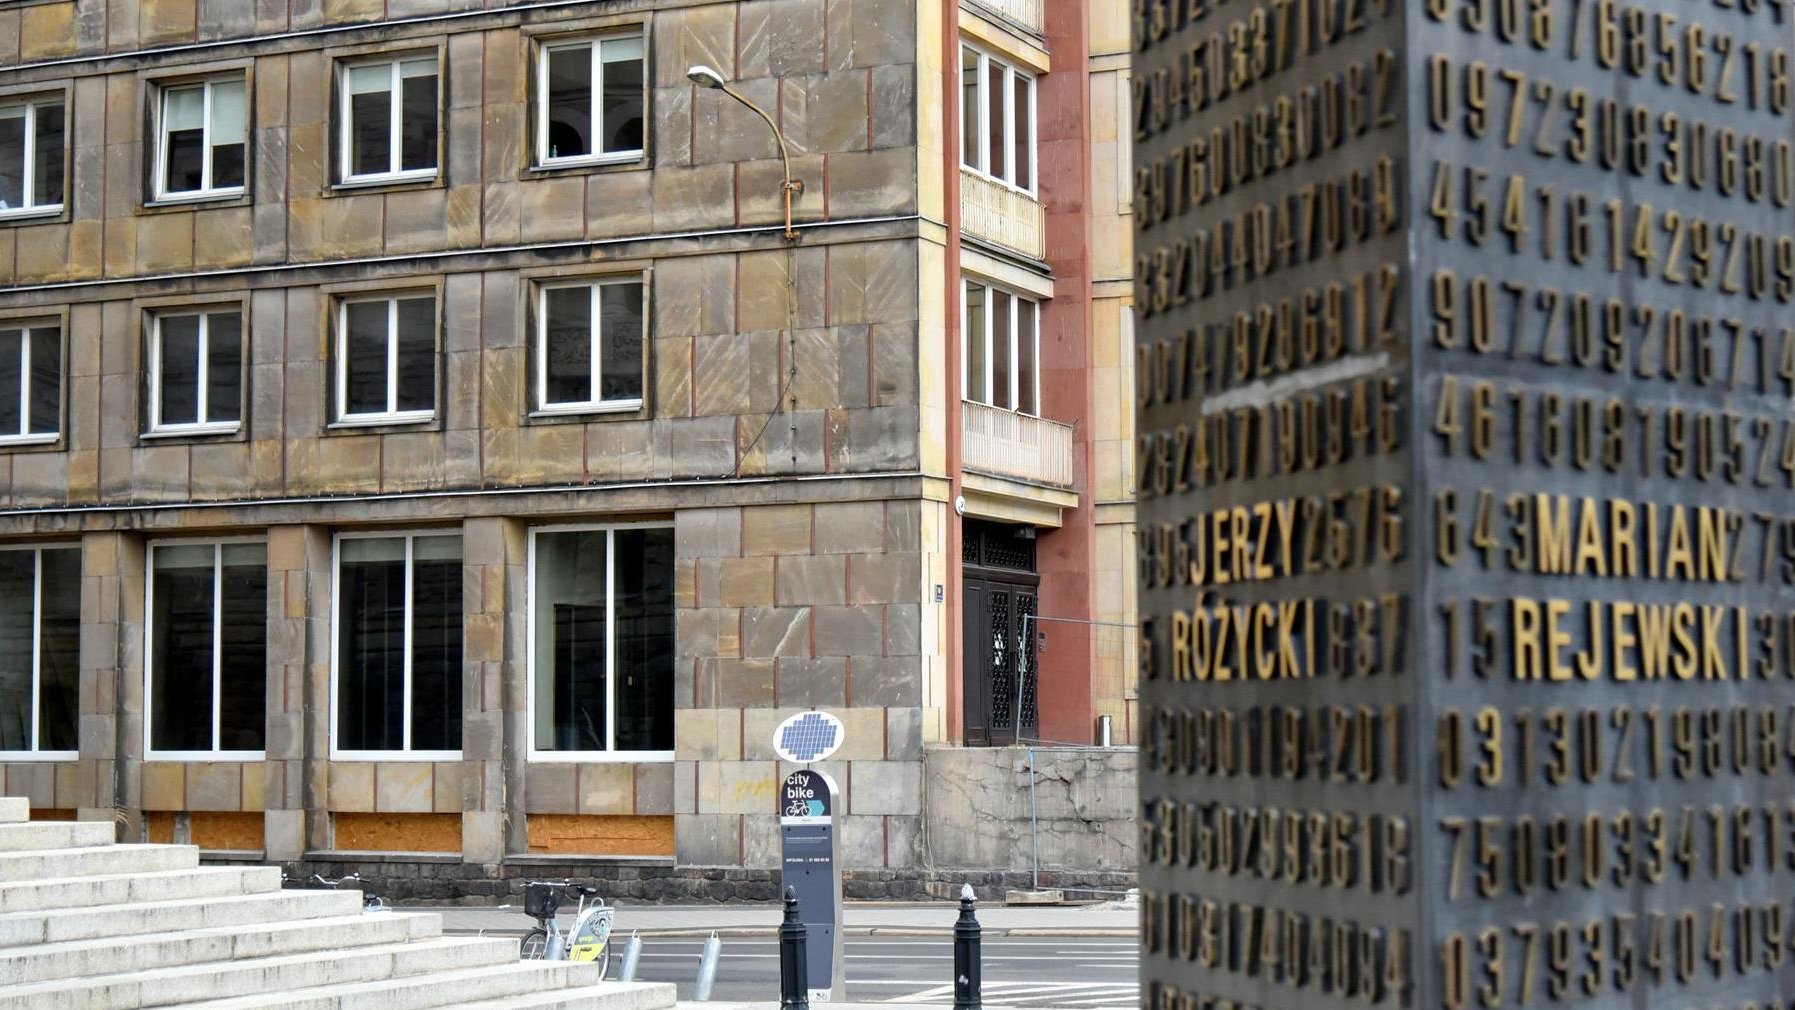 Już latem mieszkańcy Poznania i regionu będą mogli odwiedzić Centrum Szyfrów Enigma - nowoczesną placówkę, która przybliży sekrety kryptologii i przypomni niezwykłą historię polskich matematyków